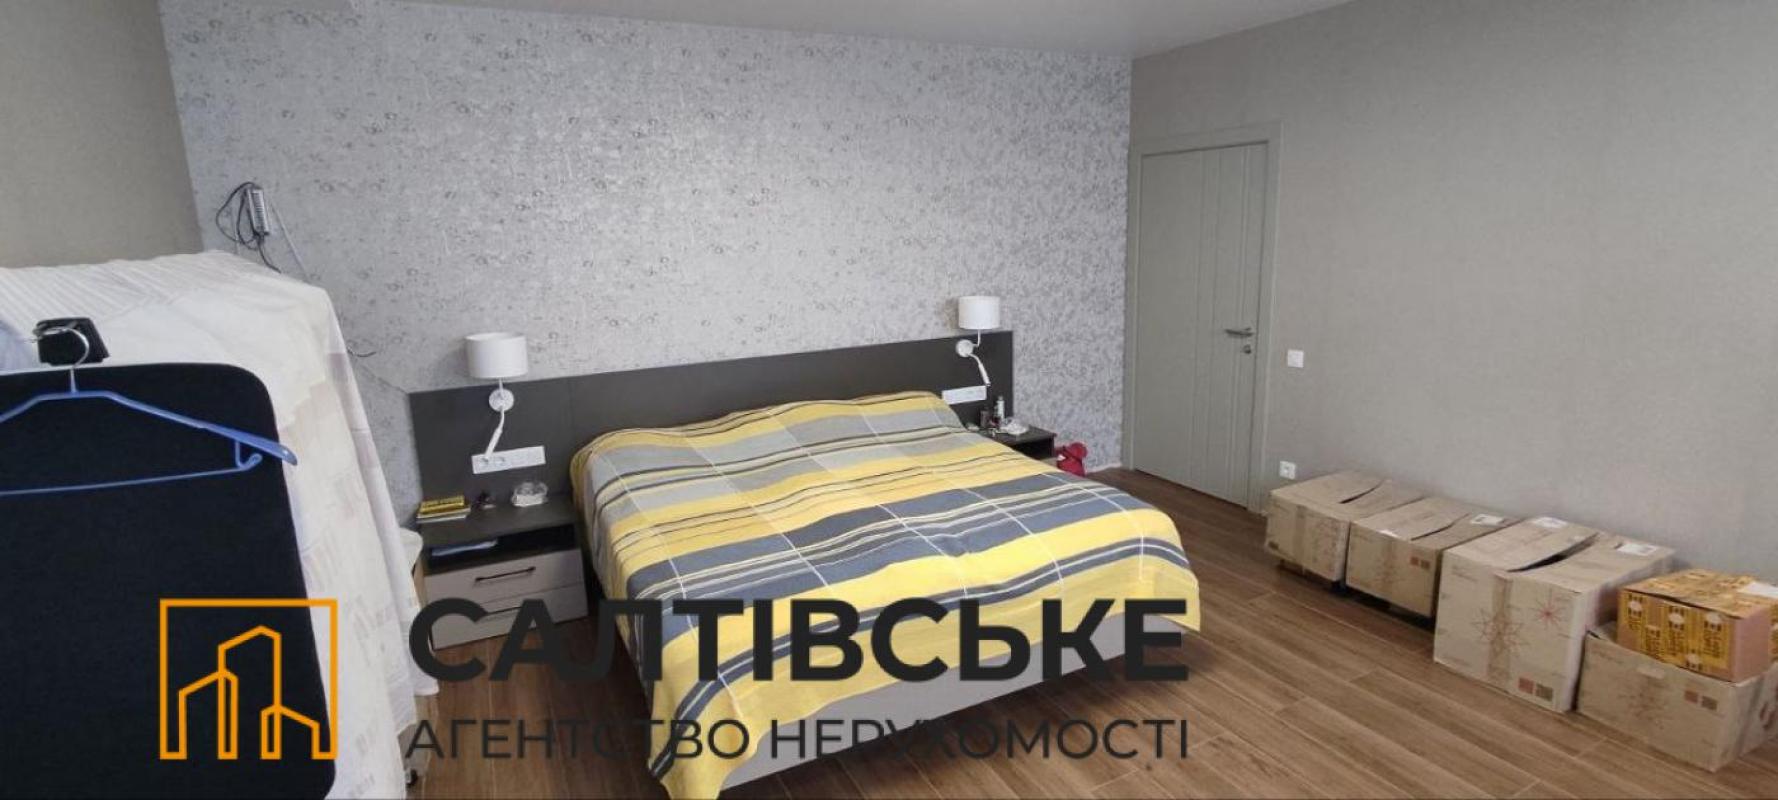 Sale 3 bedroom-(s) apartment 93 sq. m., Akademika Pavlova Street 158 корпус 2